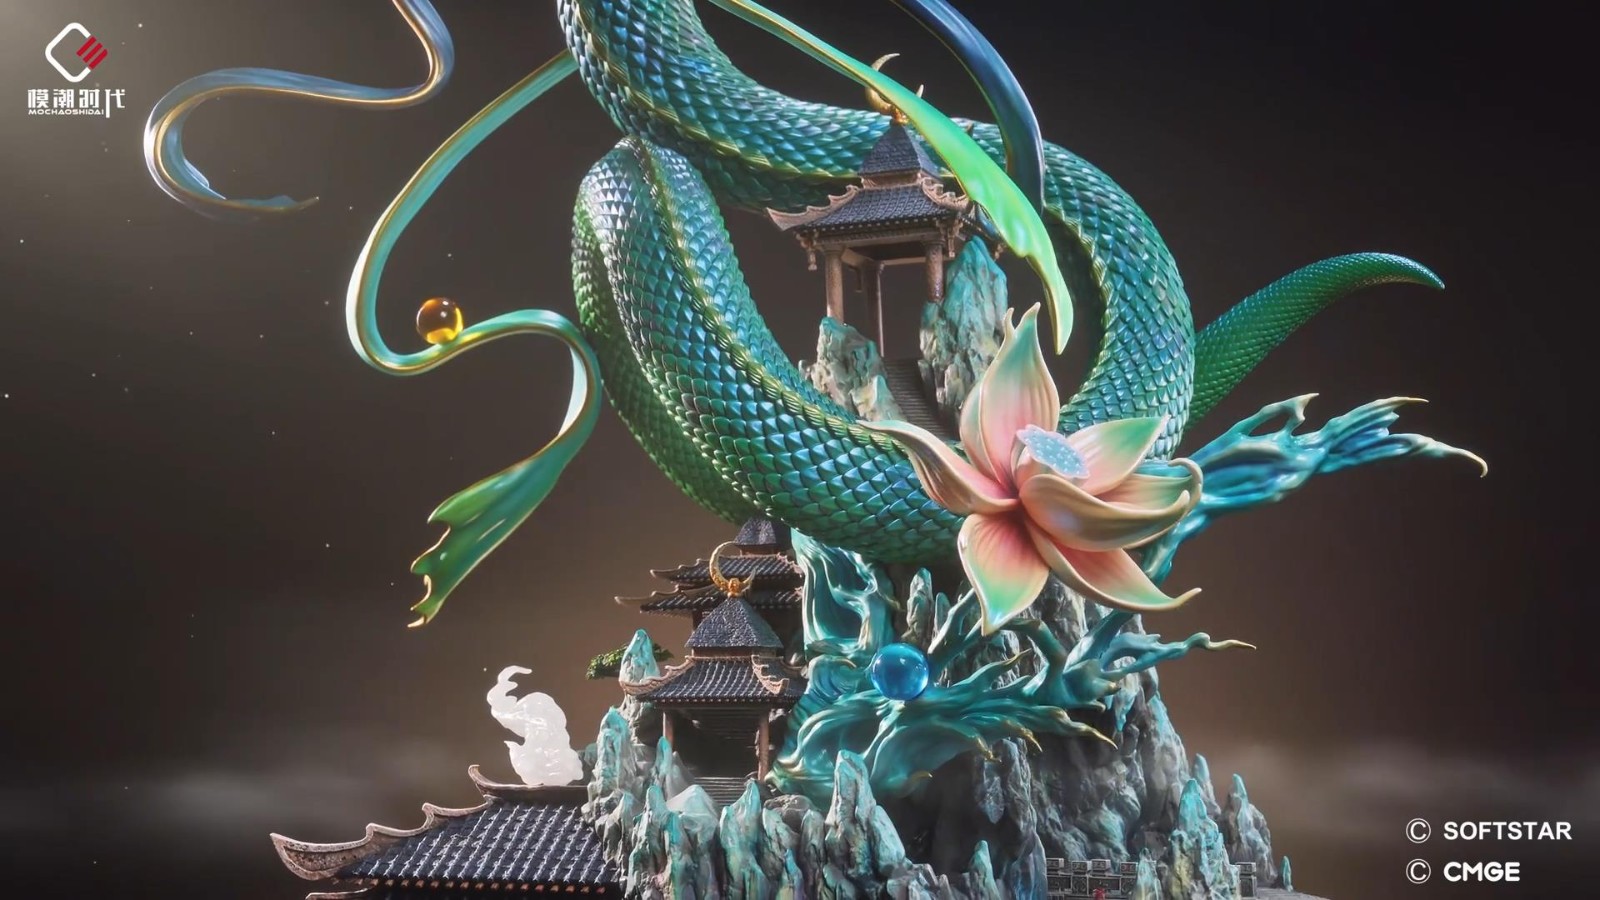 《仙剑》赵灵儿梦蛇收藏级雕像太好看了 5月16日发售